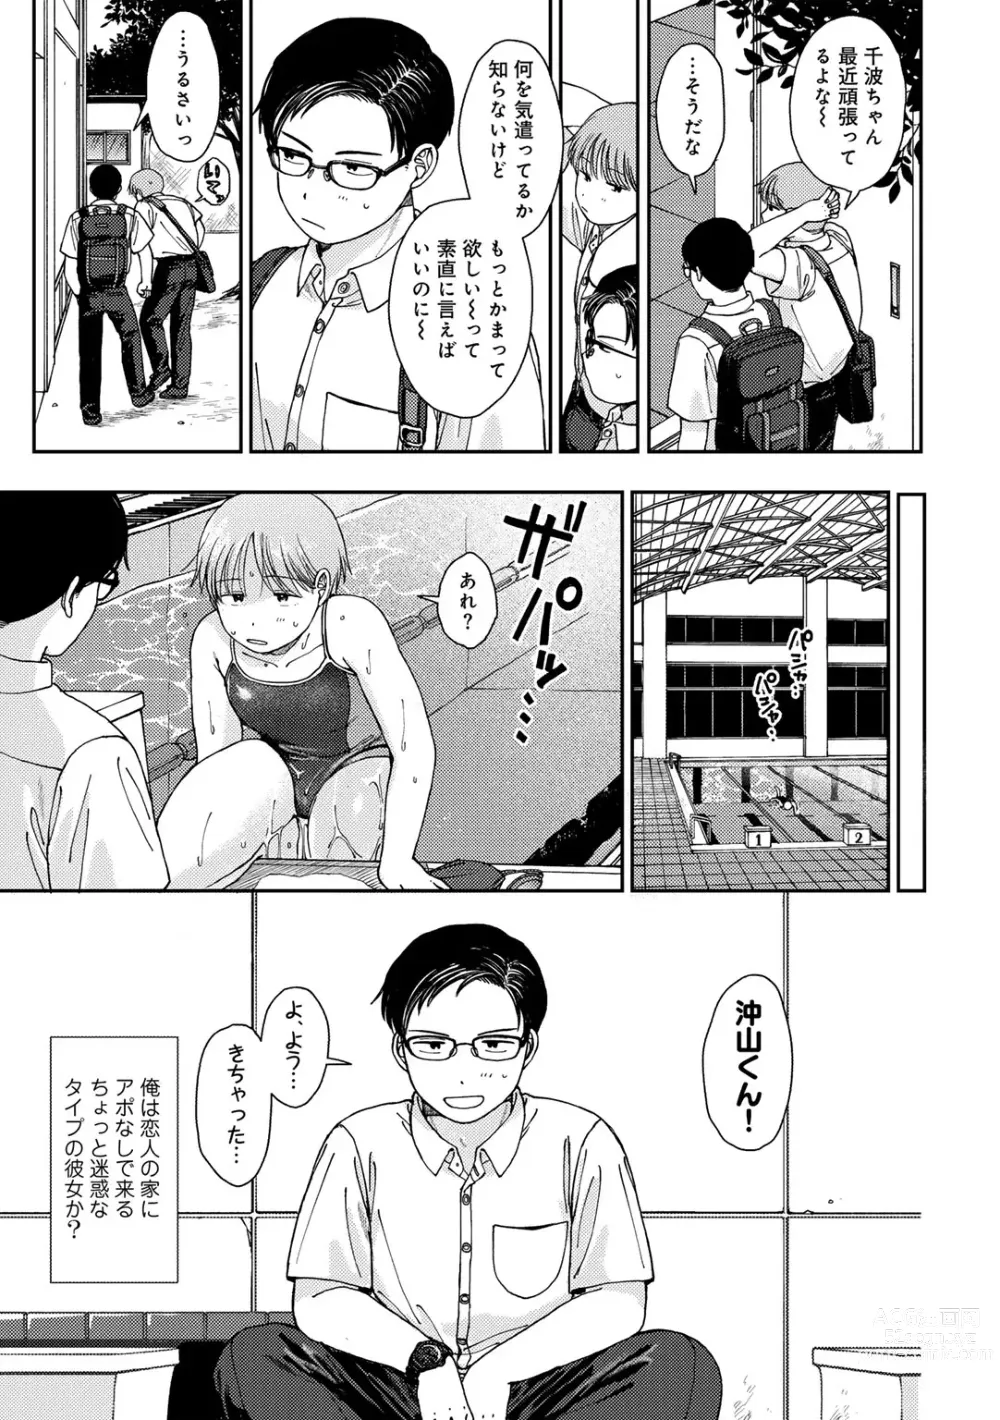 Page 7 of manga COMIC kisshug vol.4